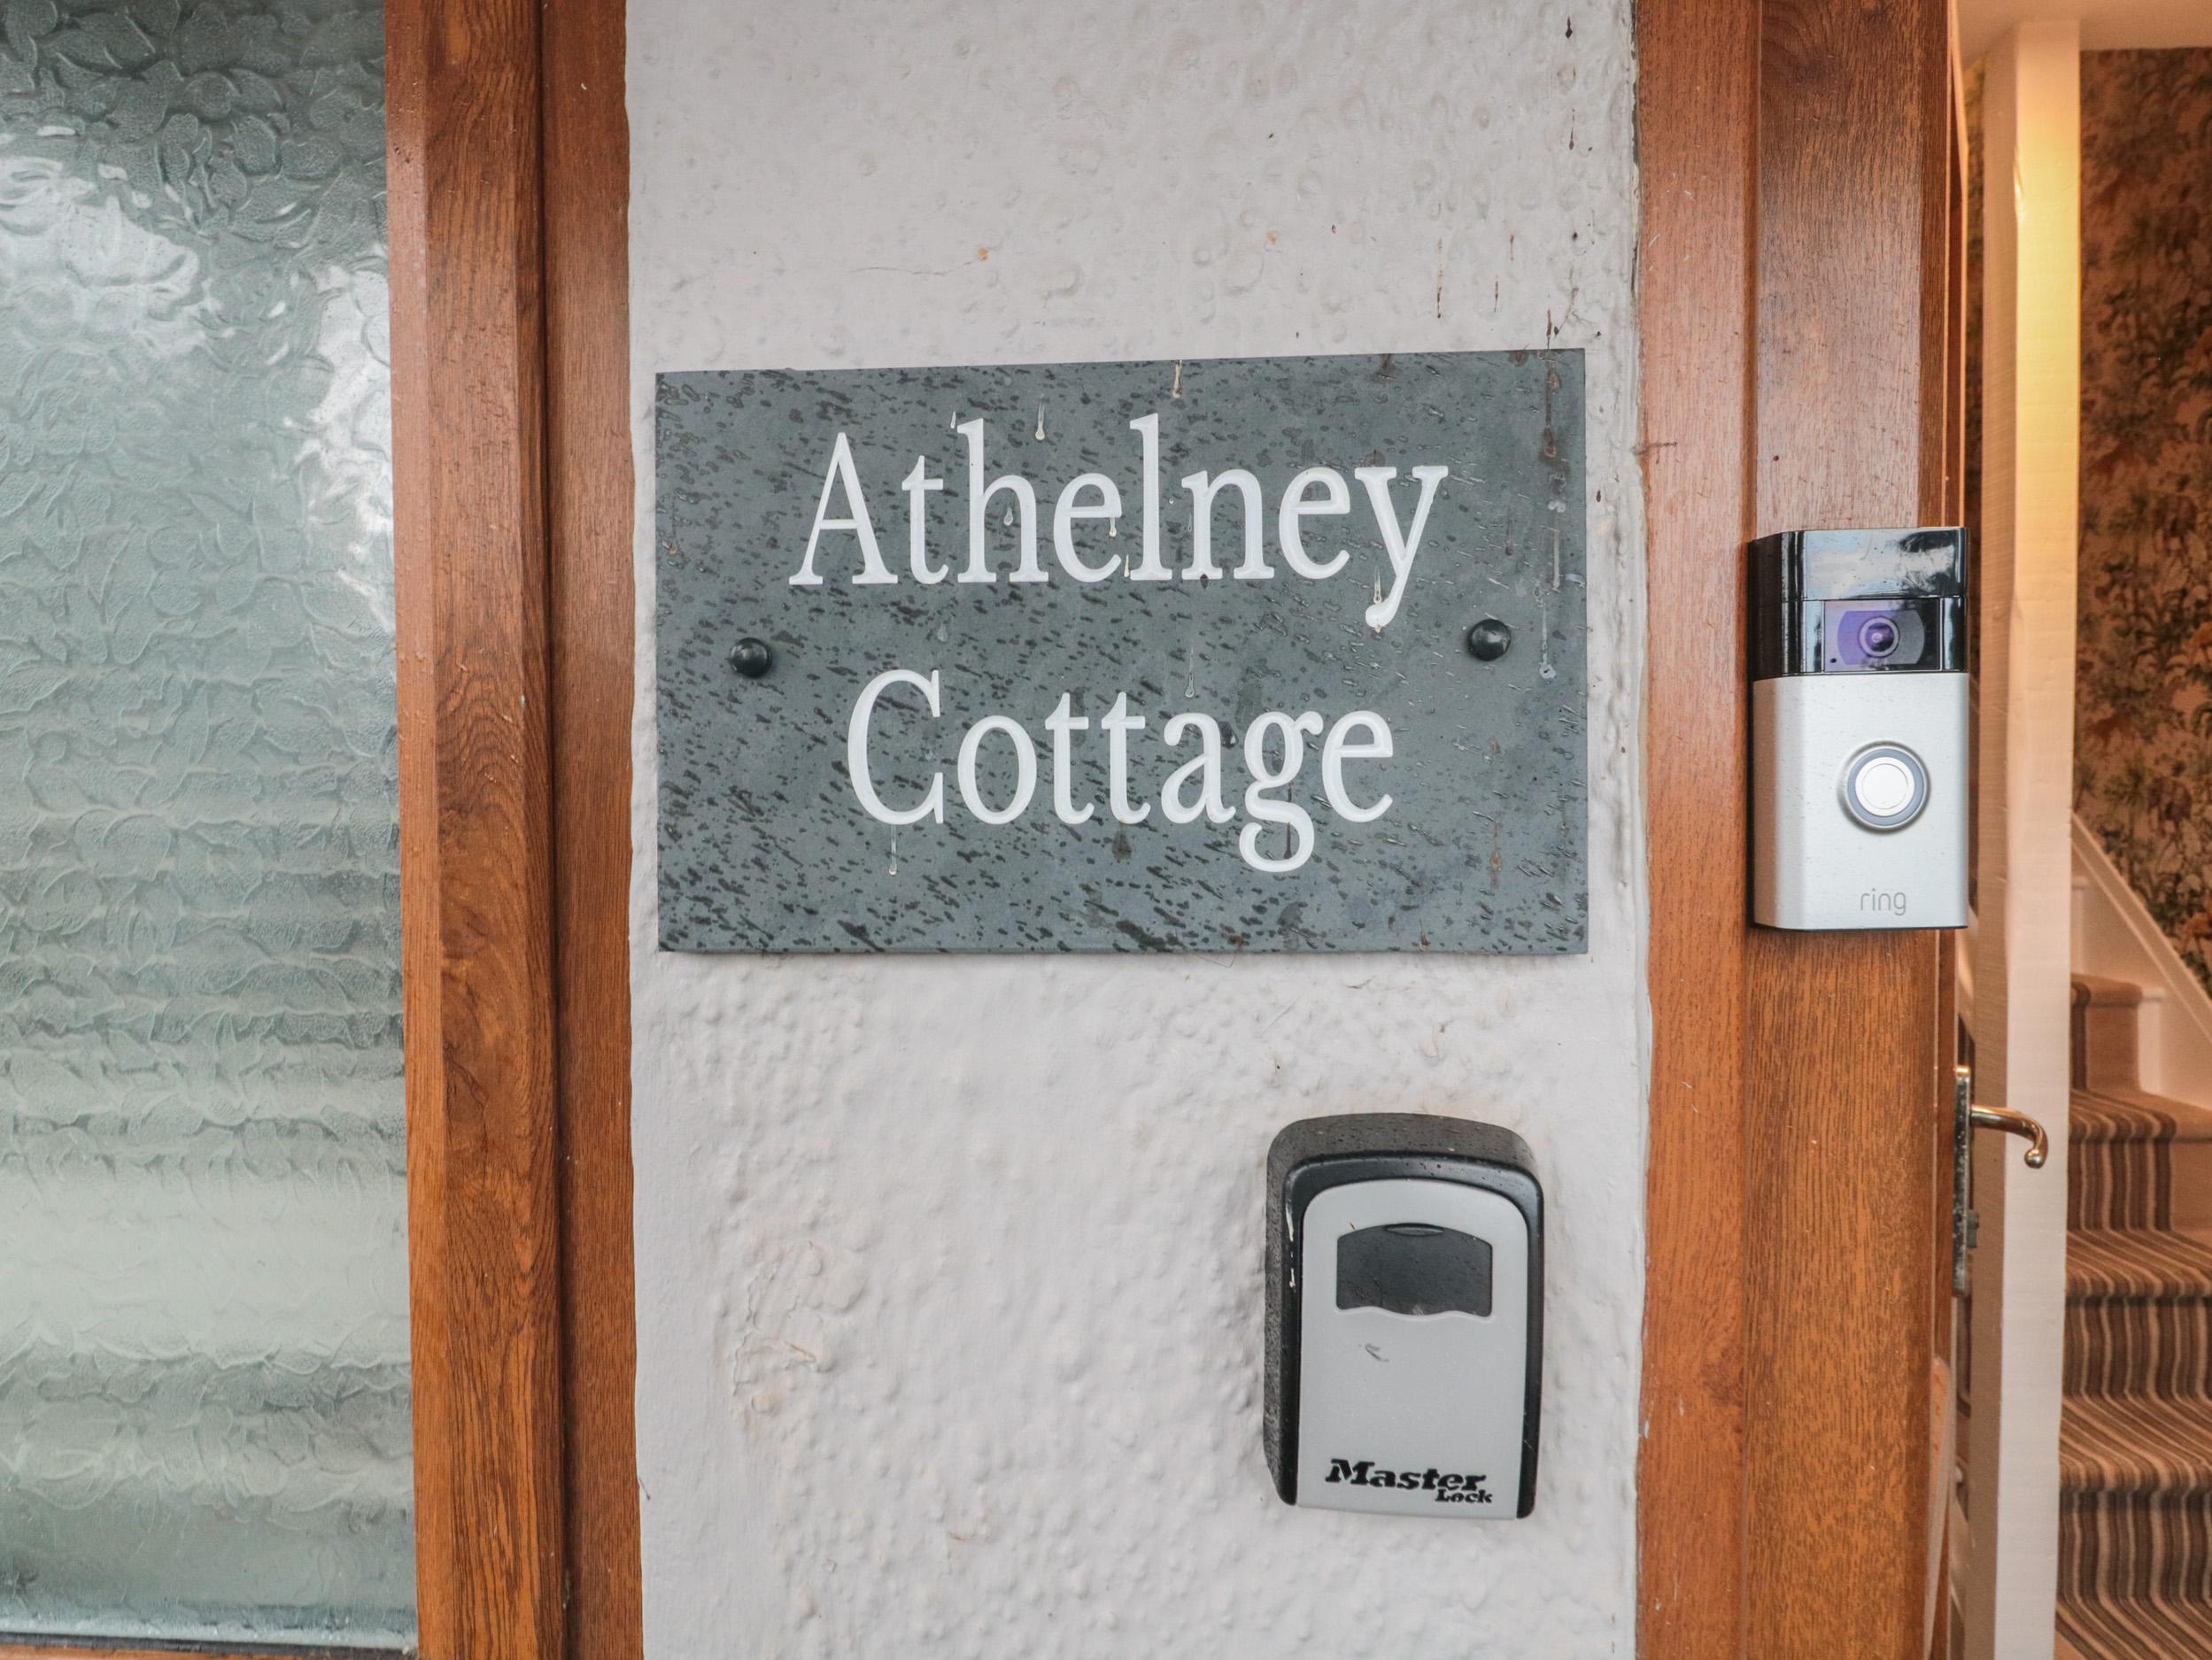 Athelney Cottage